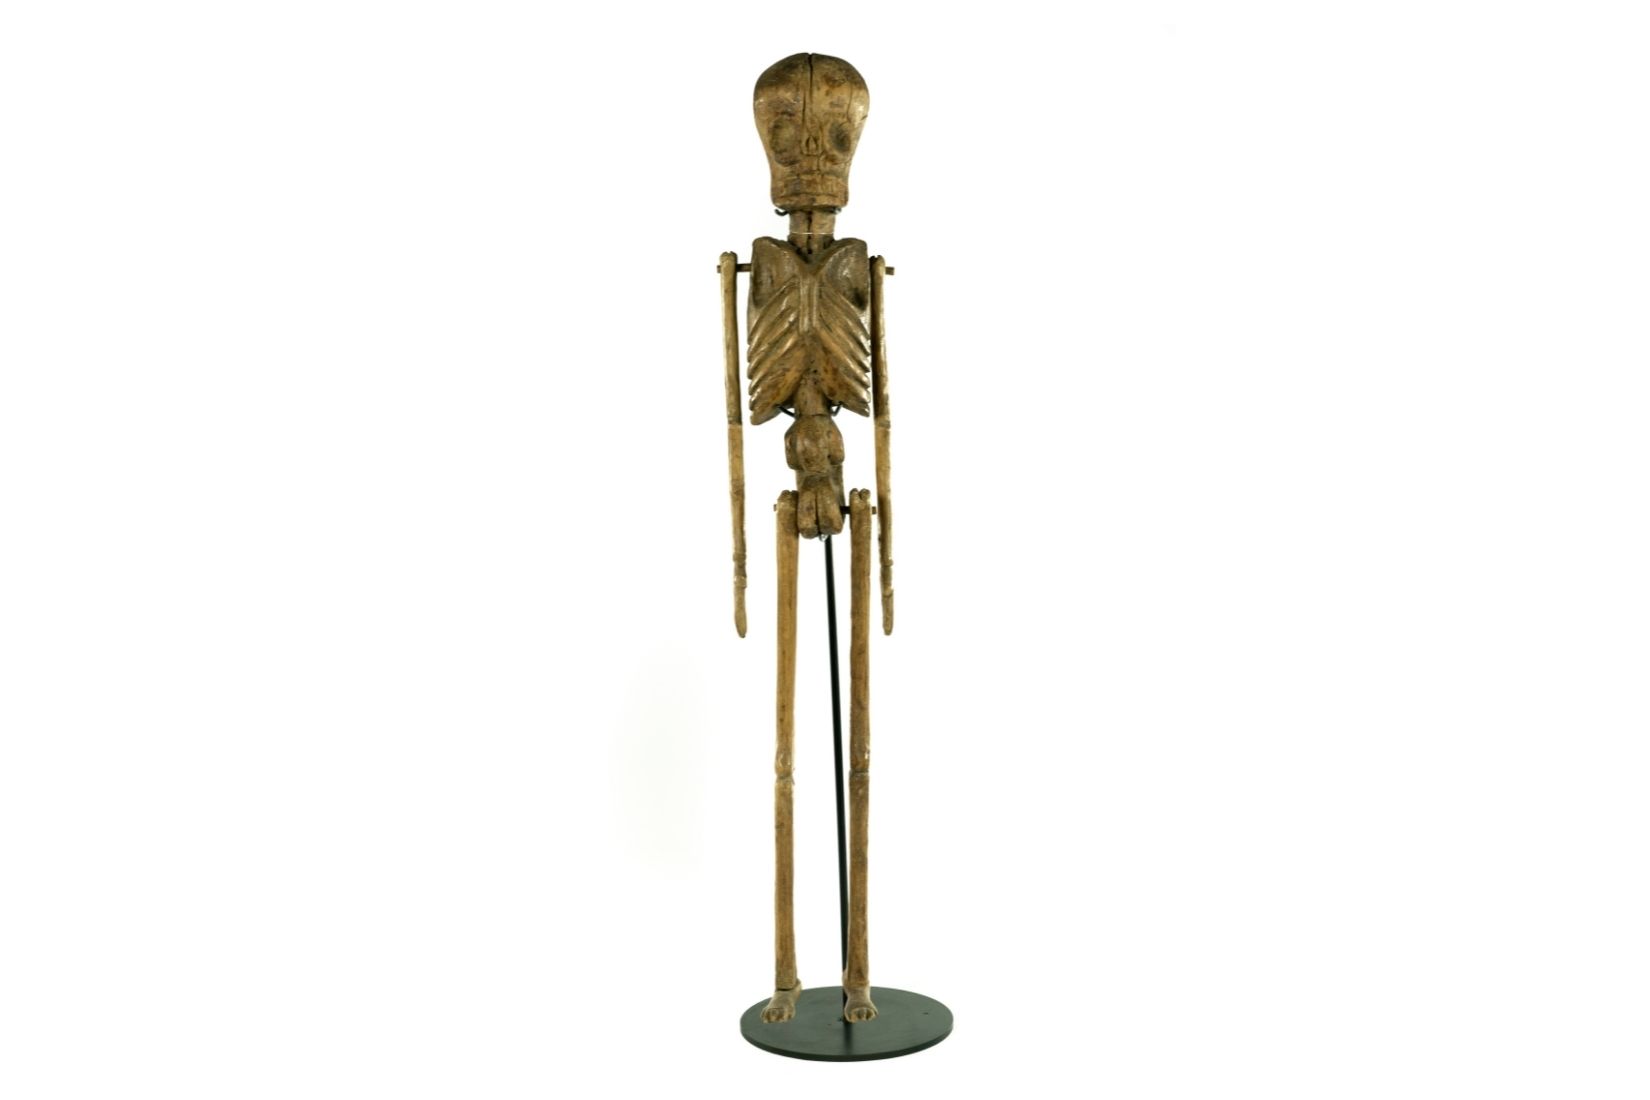 Esqueleto antiguo en madera tallada. Artesano y procedencia desconocidos. Col. Guillermo Tovar y de Teresa, pieza donada a AmigosMAP. (Foto: EKV).